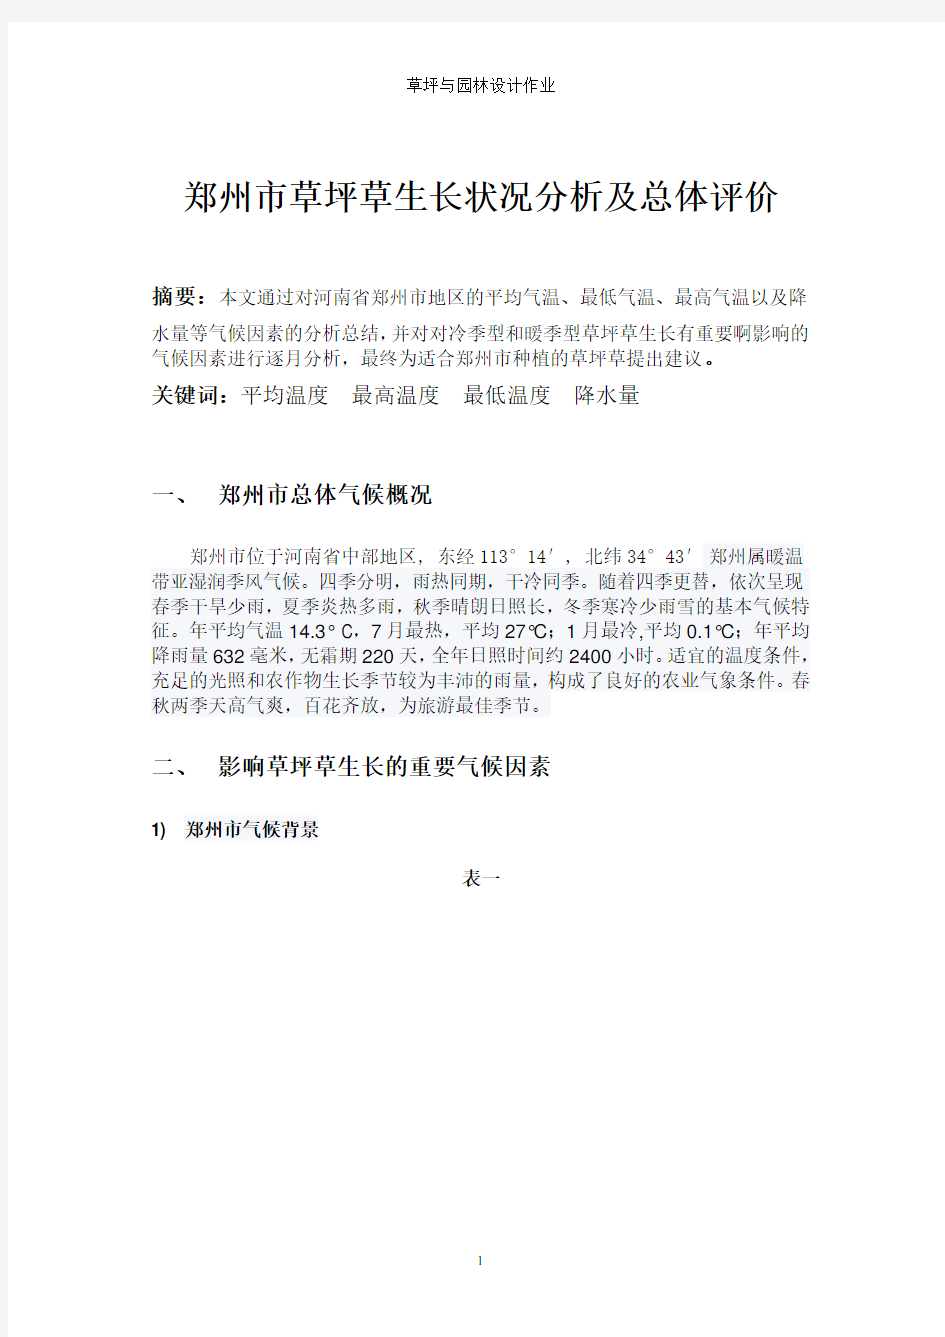 郑州市总体气候概况(2020年整理).pdf